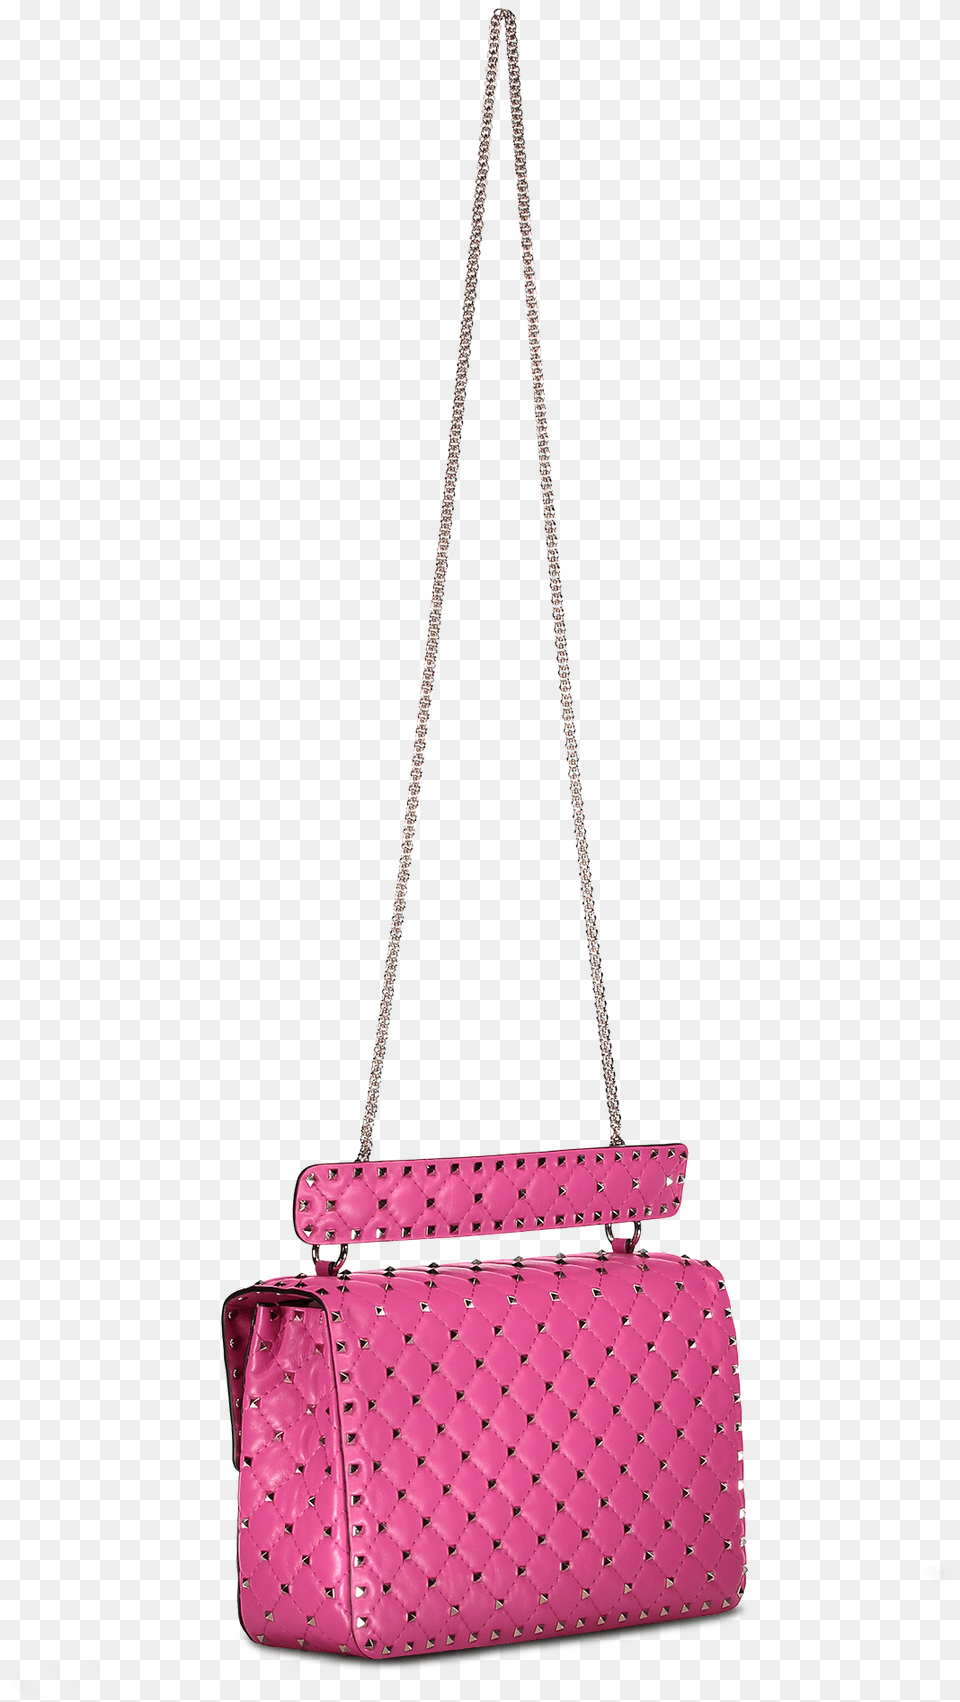 Rockstud Spike Large Shoulder Bag Pink Orchid, Accessories, Handbag, Purse Png Image